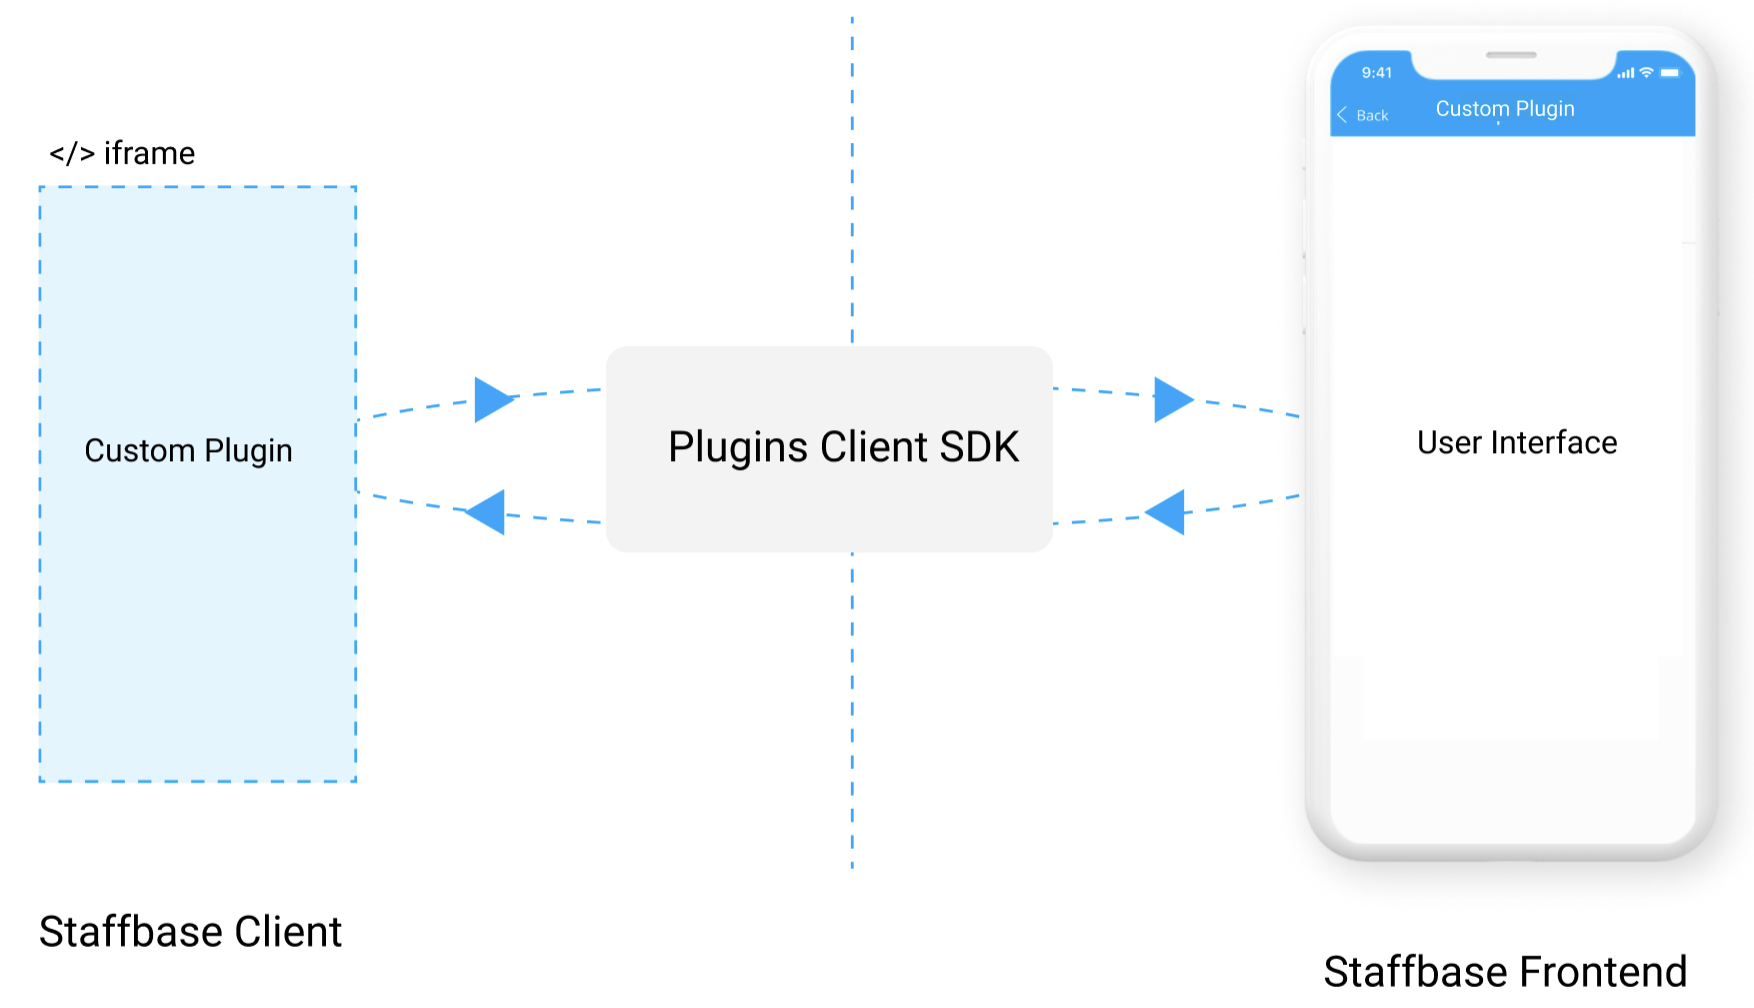 Plugins Client SDK